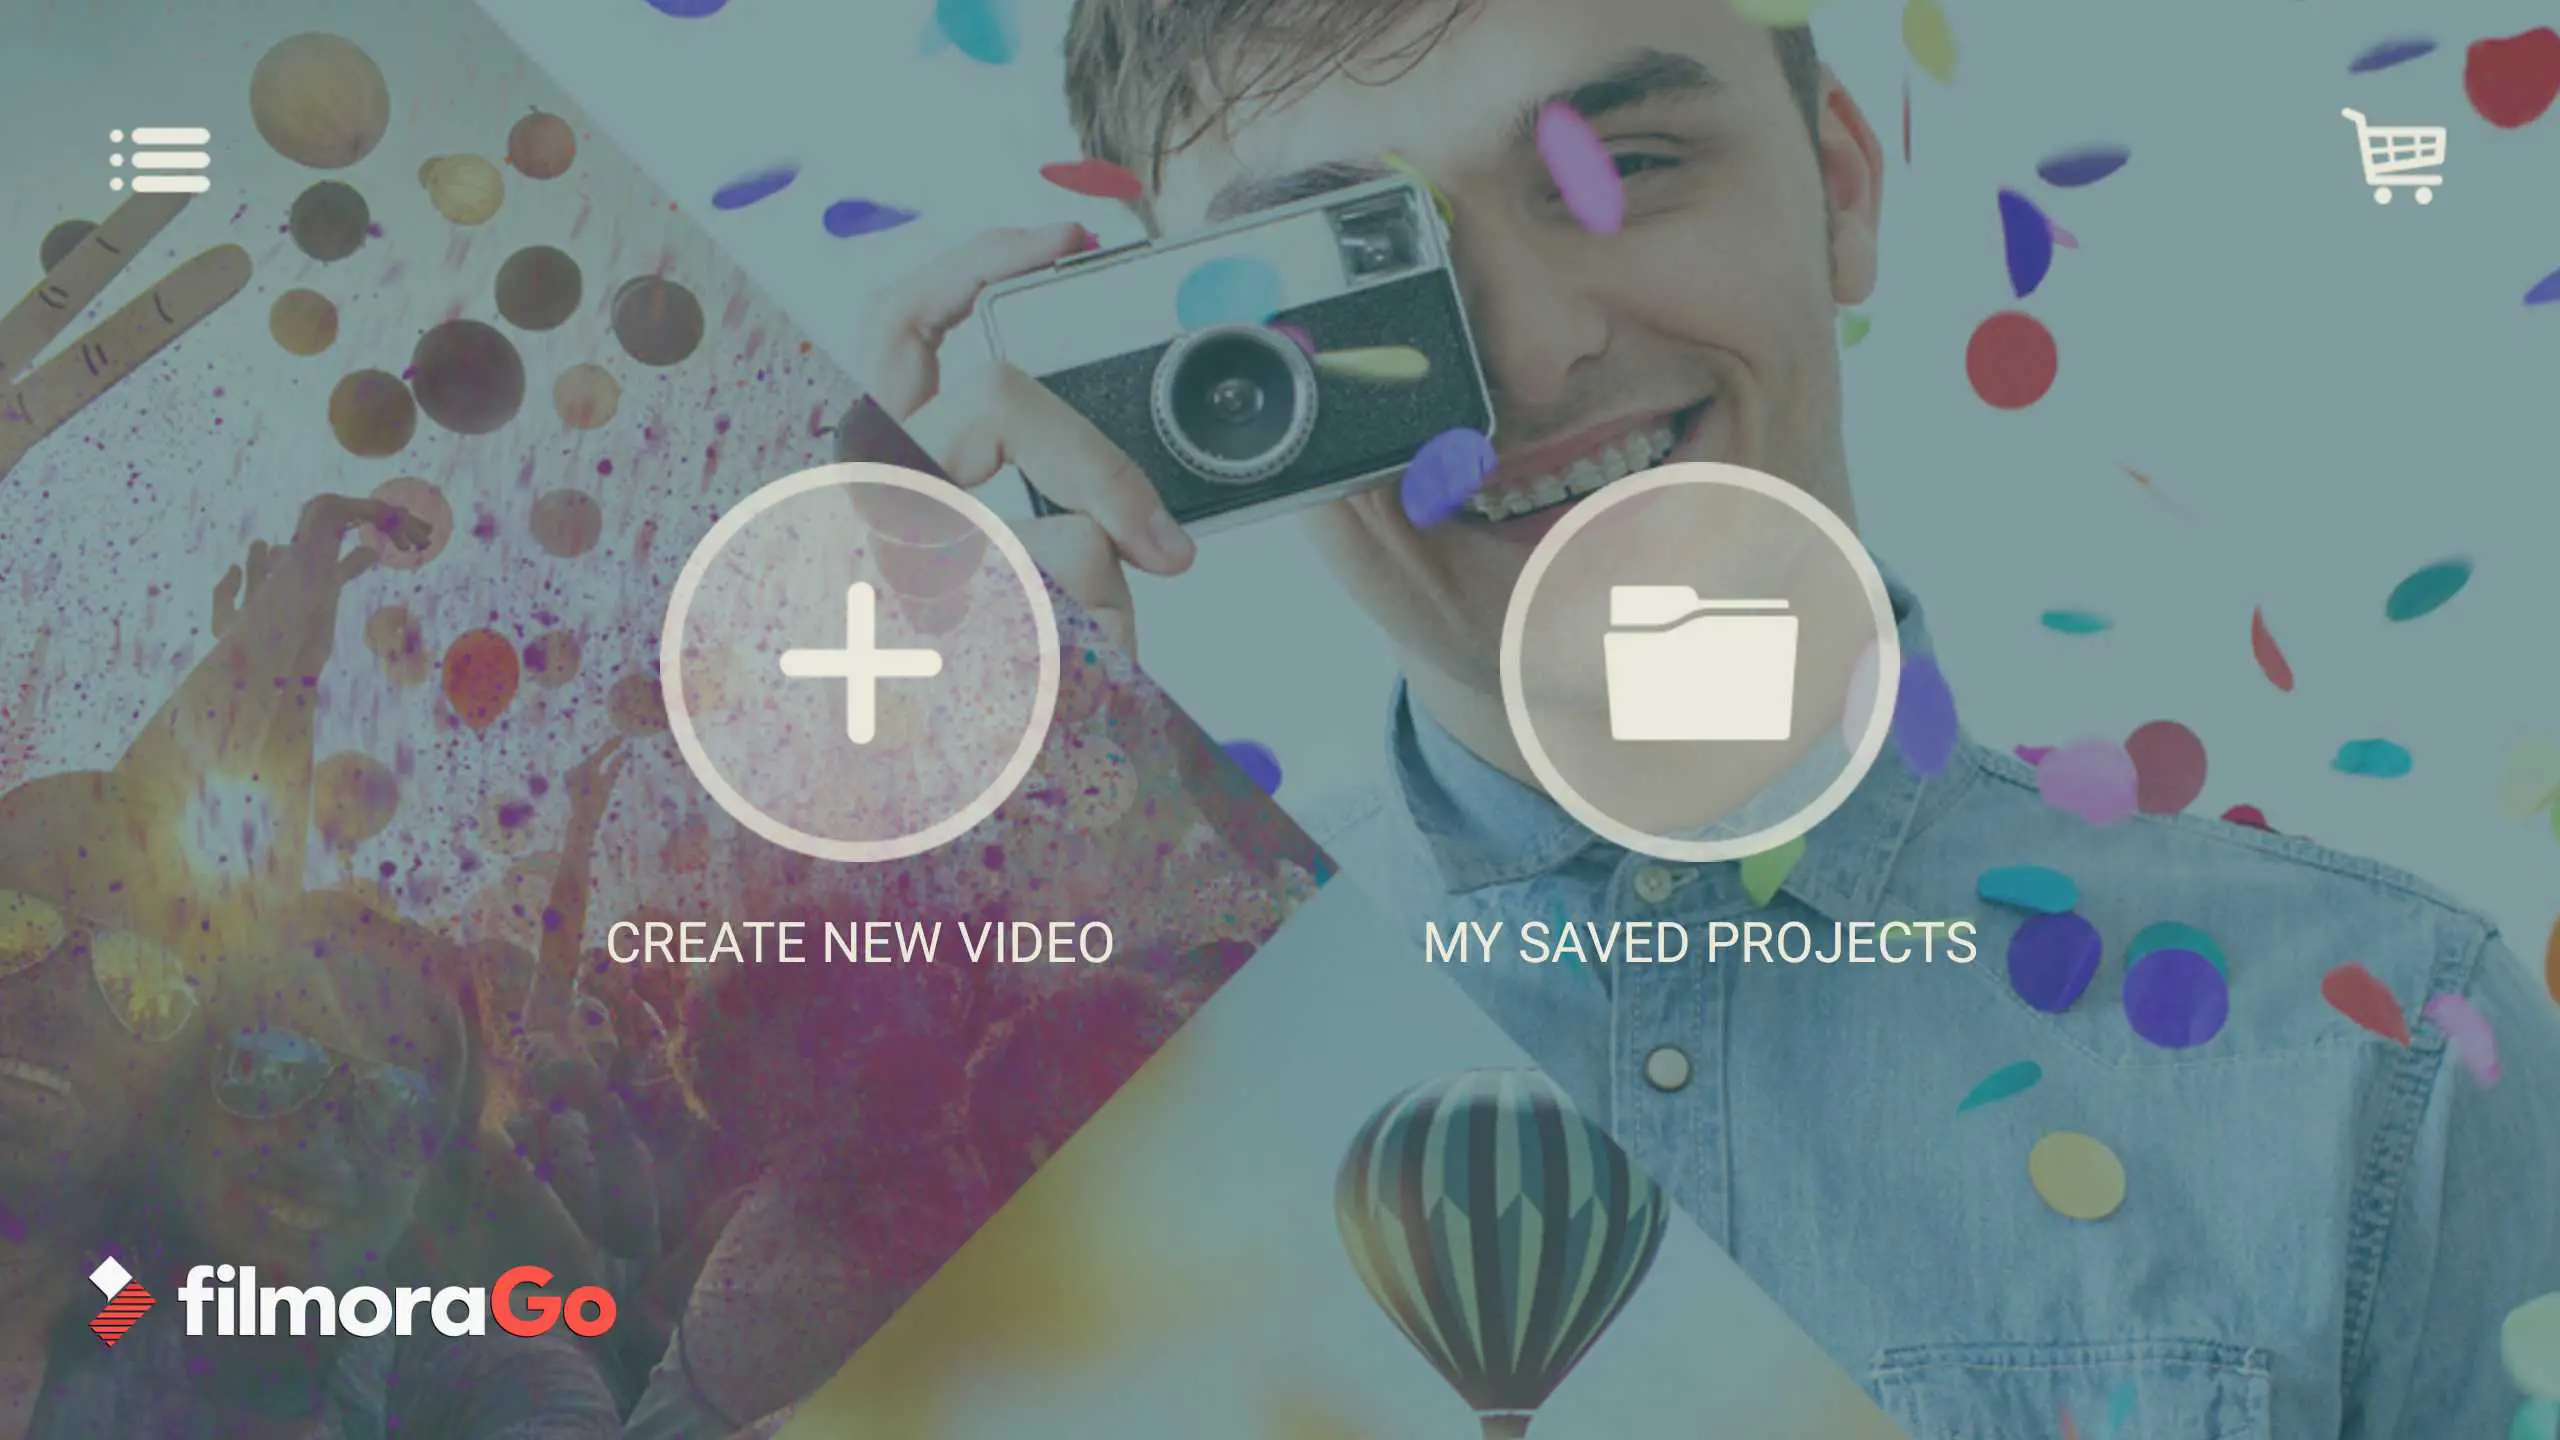 Tela inicial do aplicativo FilmoraGo com novos botões de vídeo e salvar projetos